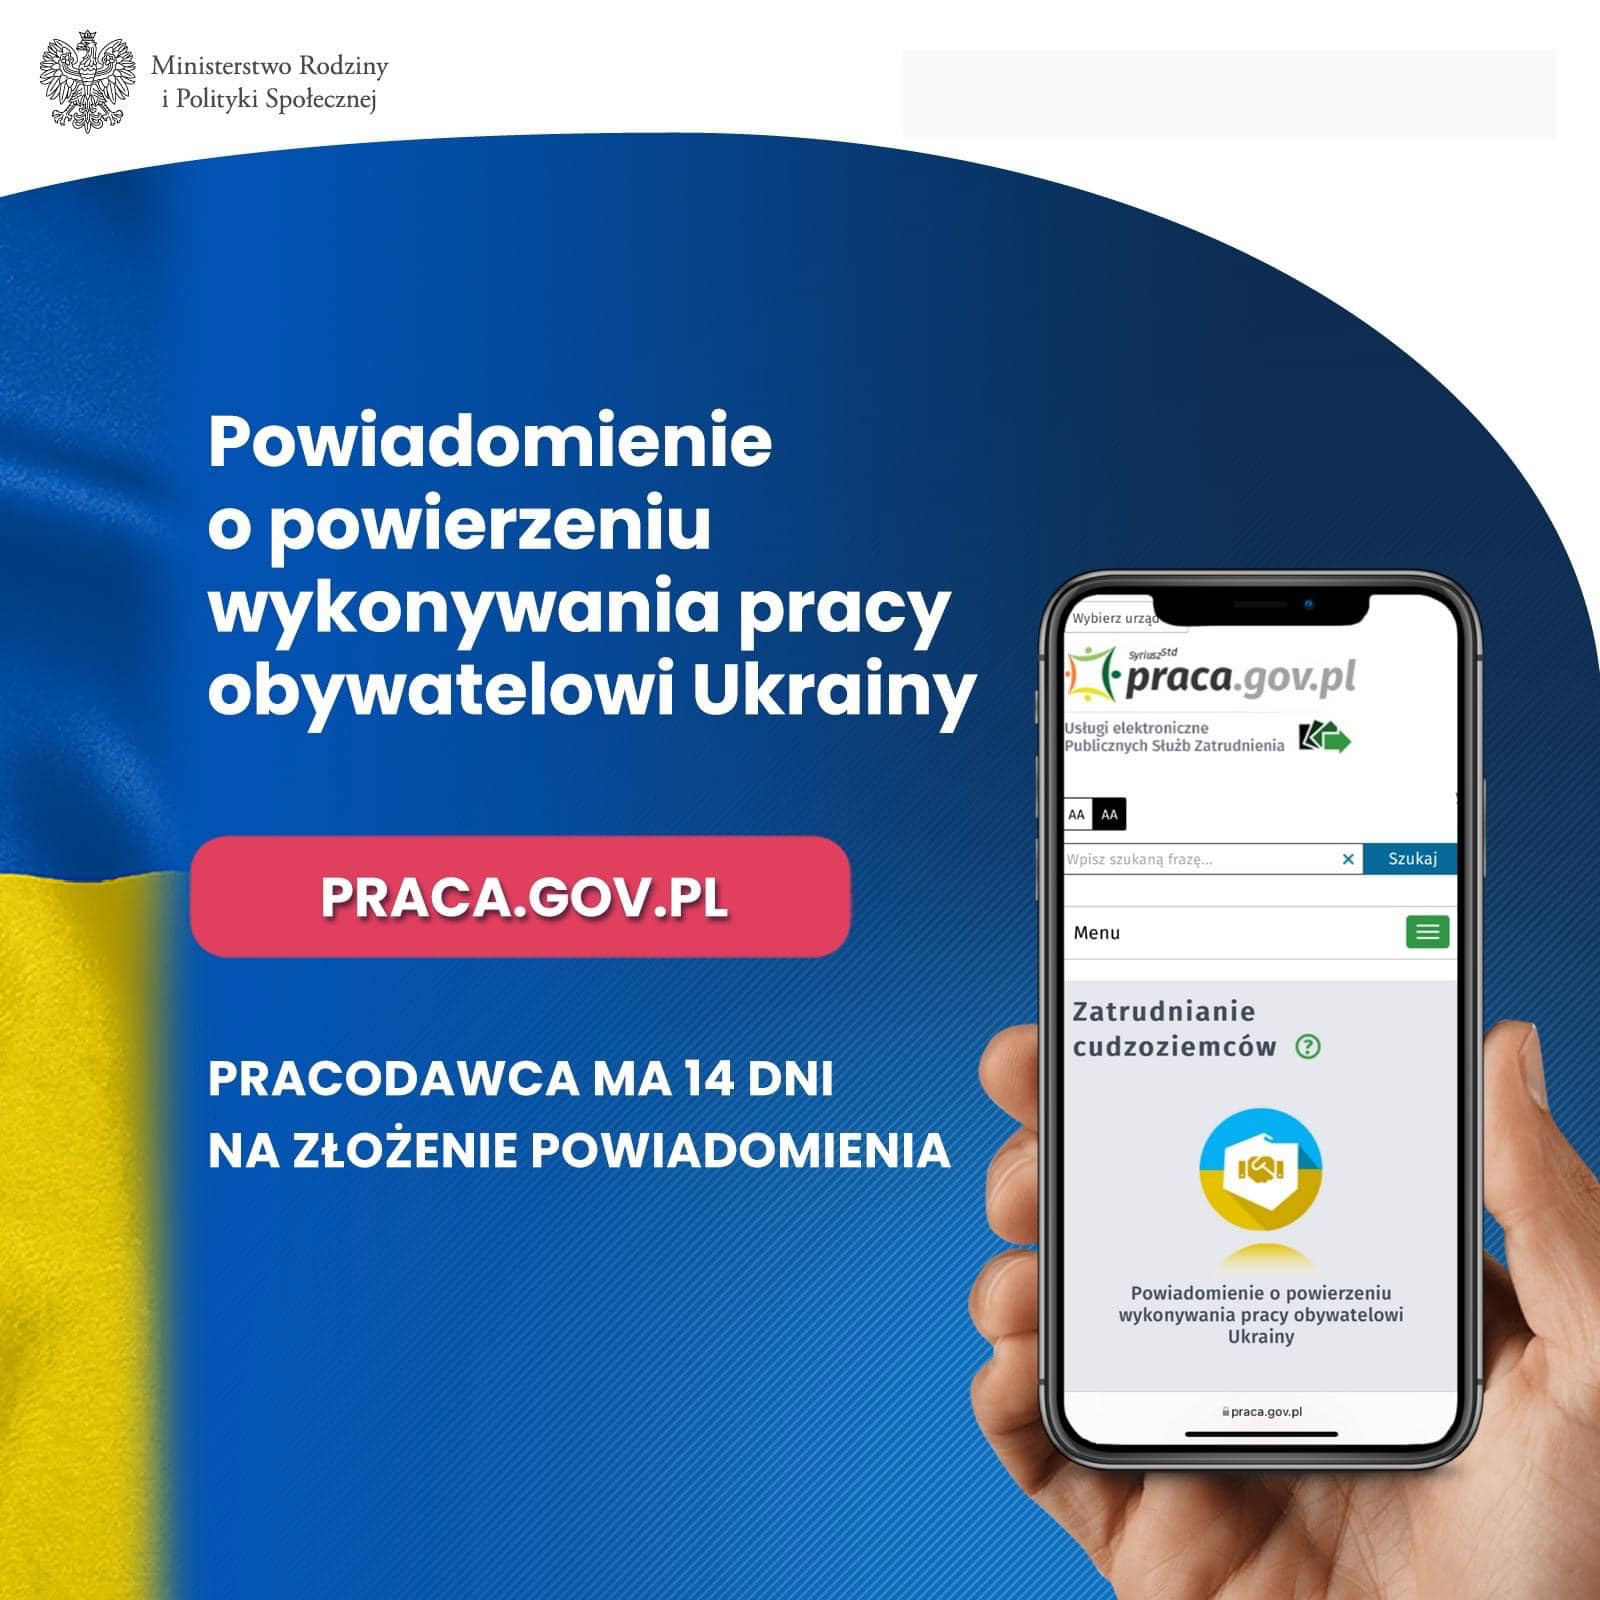 Grafika z tekstem: "Powiadomienie o powierzeniu wykonywania pracy obywatelowi Ukrainy - Pracodawca ma 14 dni na złożenie dokumentów"